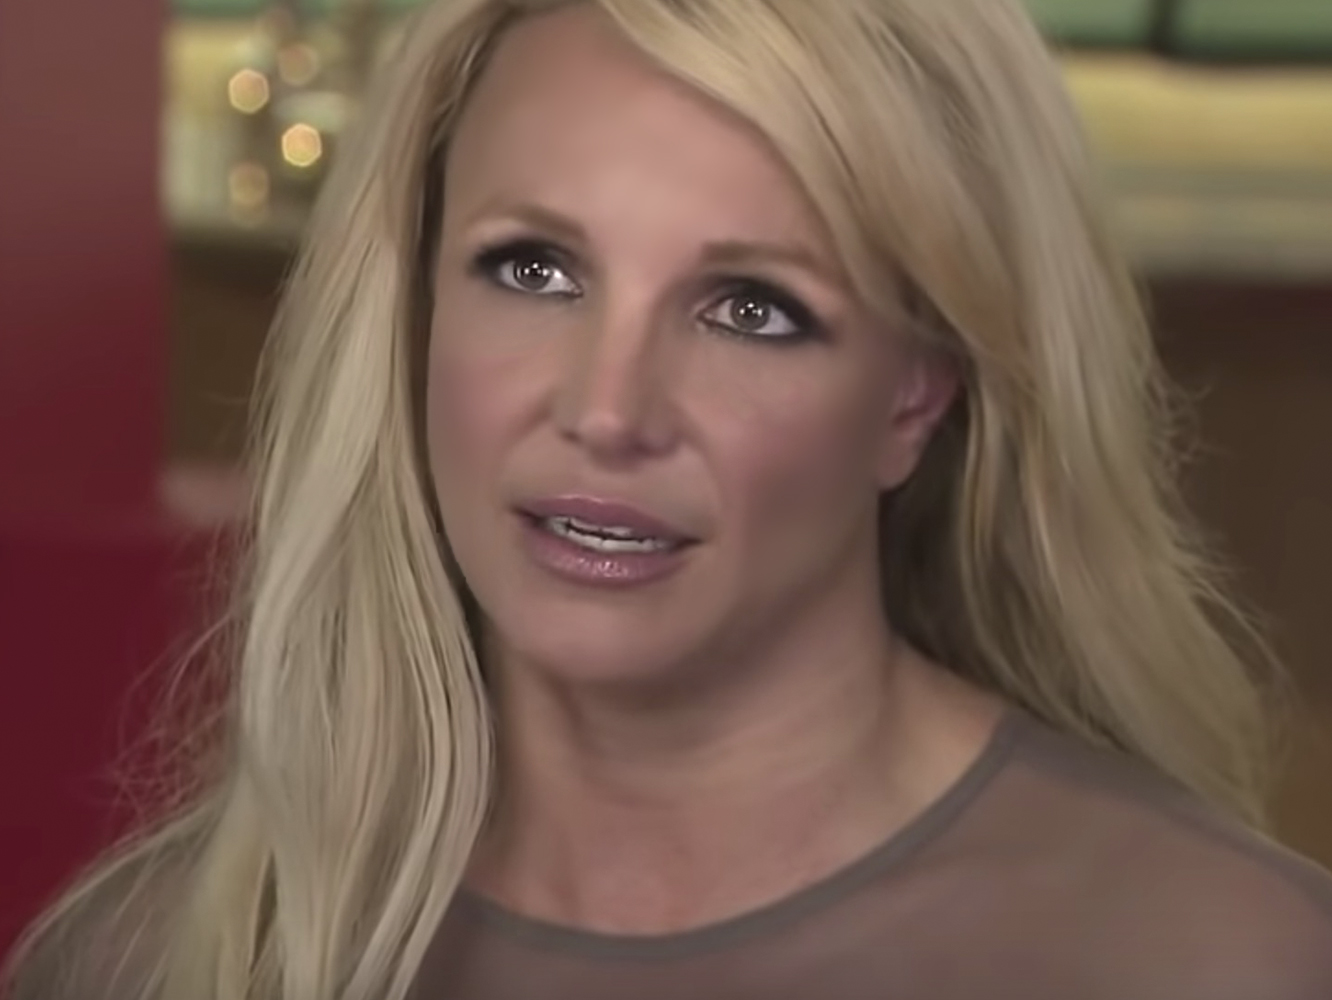  La vocalista Britney Spears canta ‘Natural Woman’ en directo y habla con recelo sobre Happy Meals